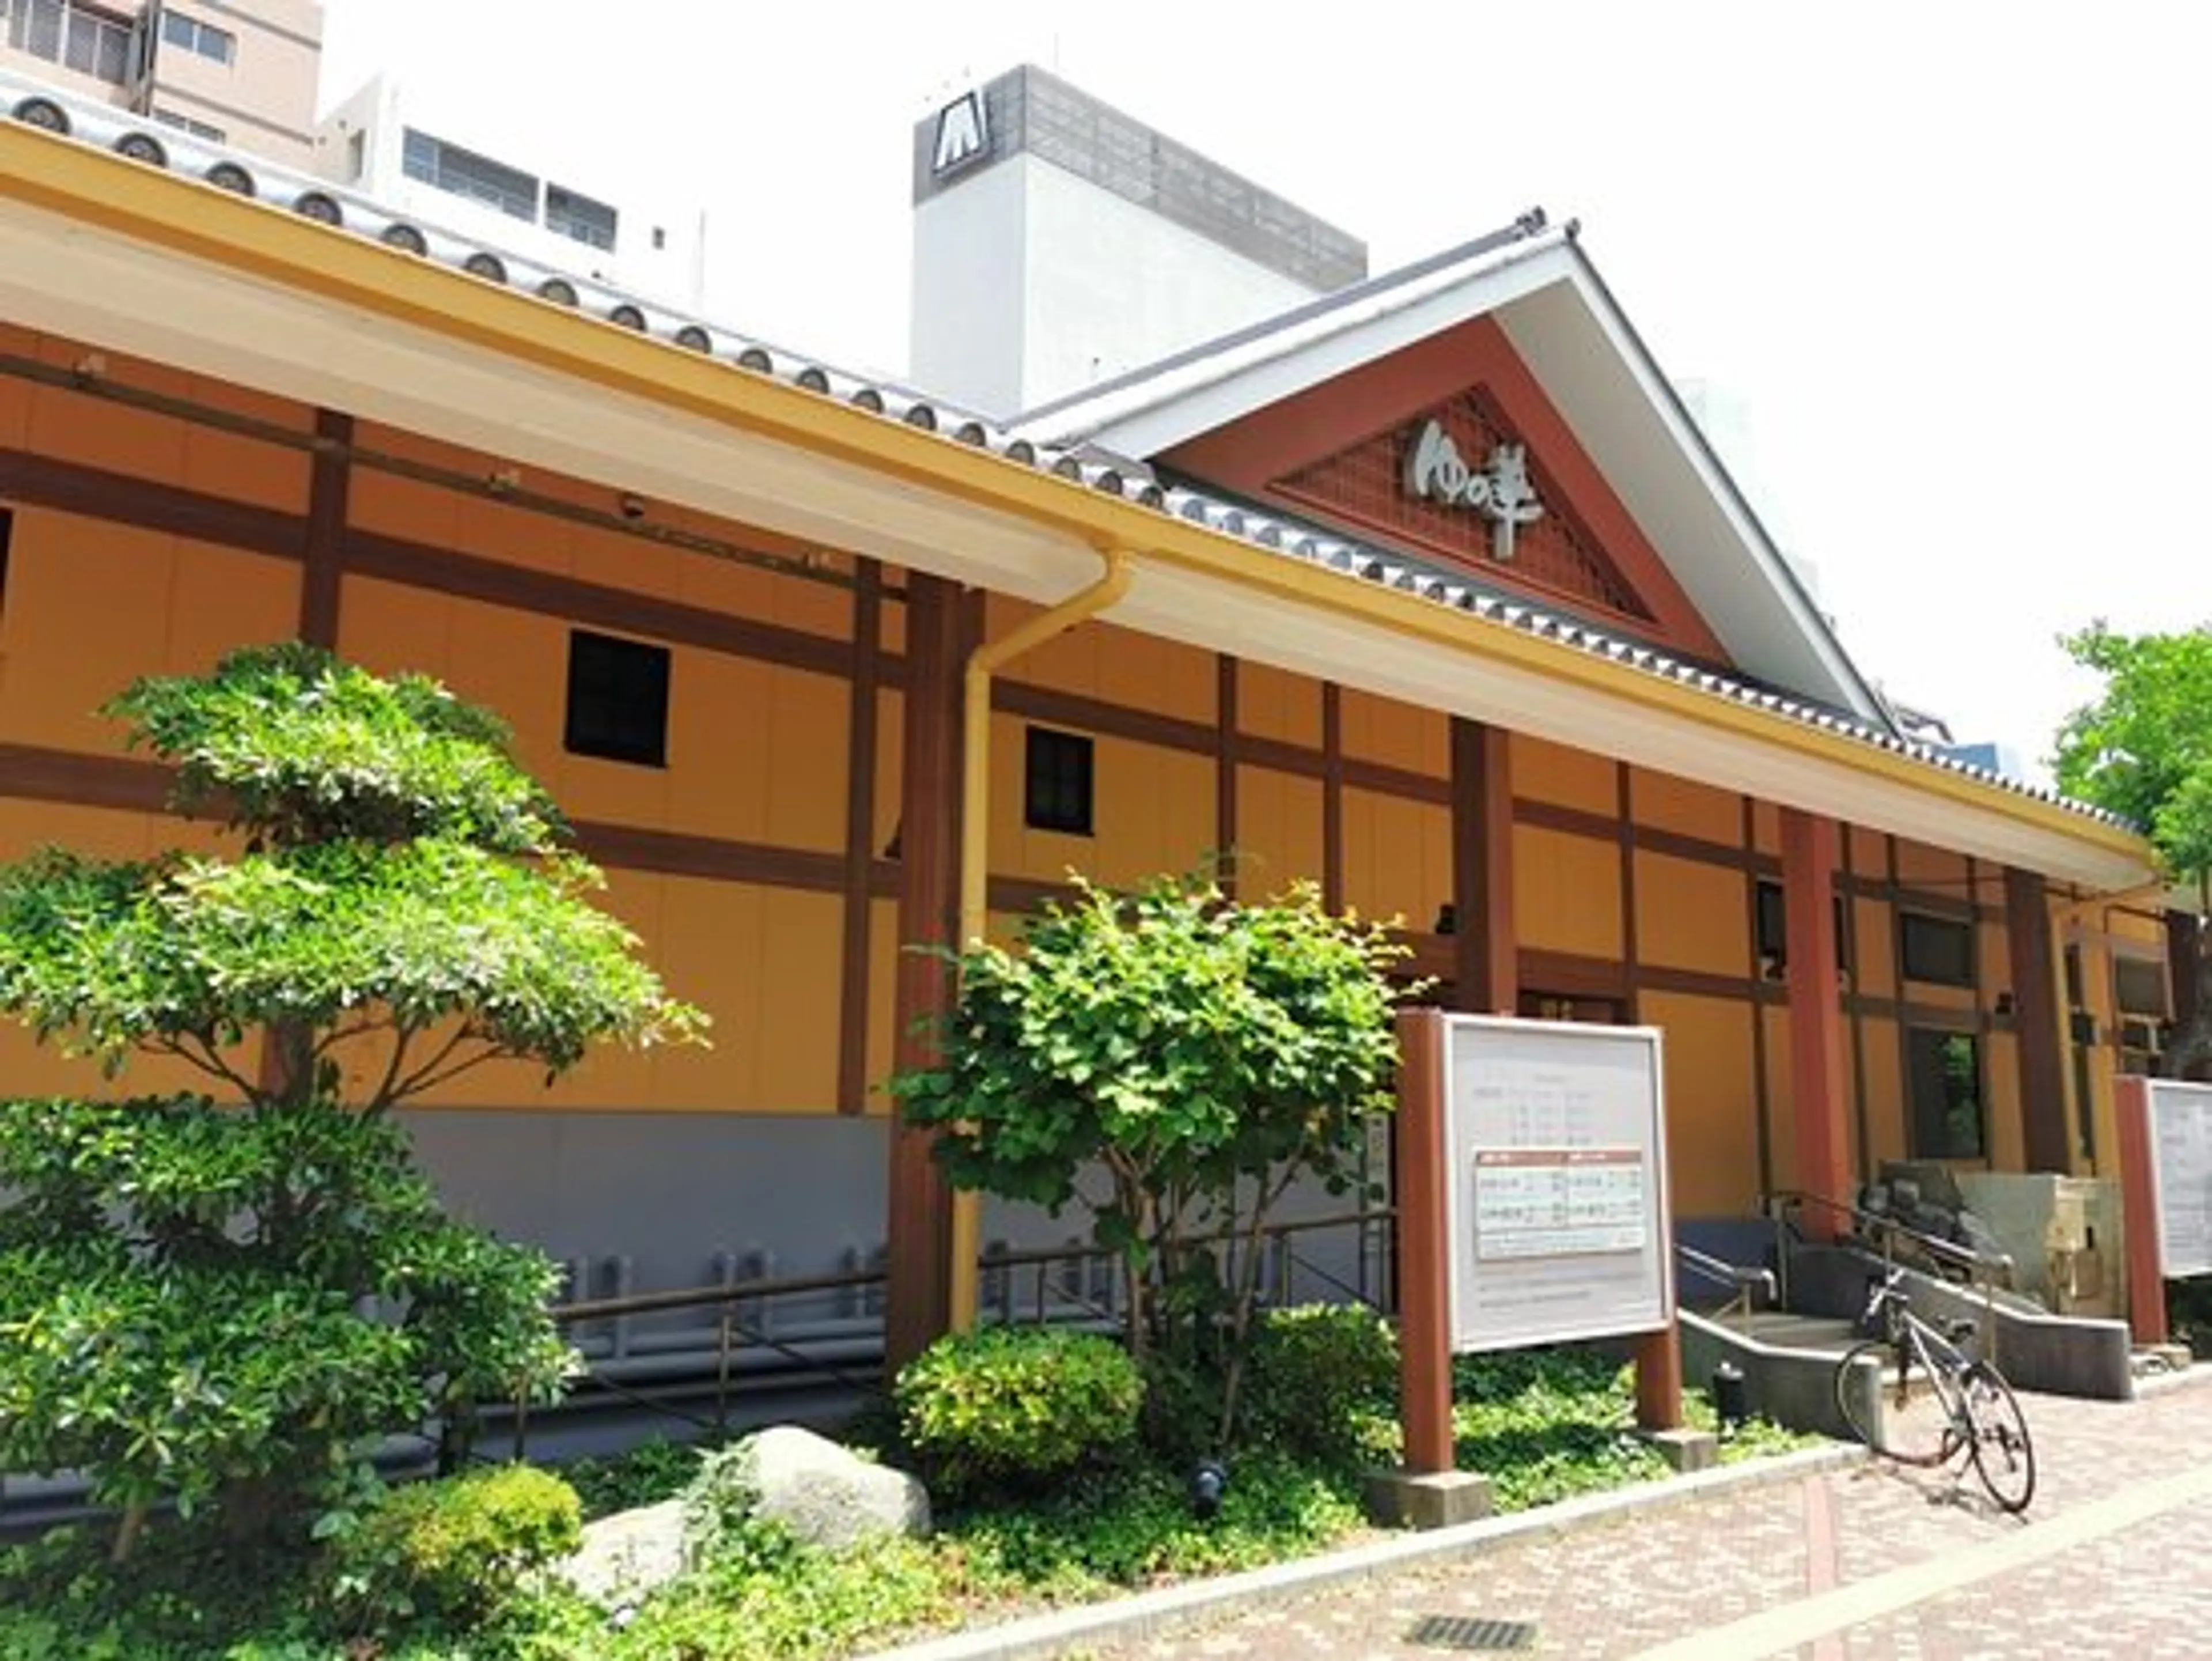 Fukuoka's Onsen